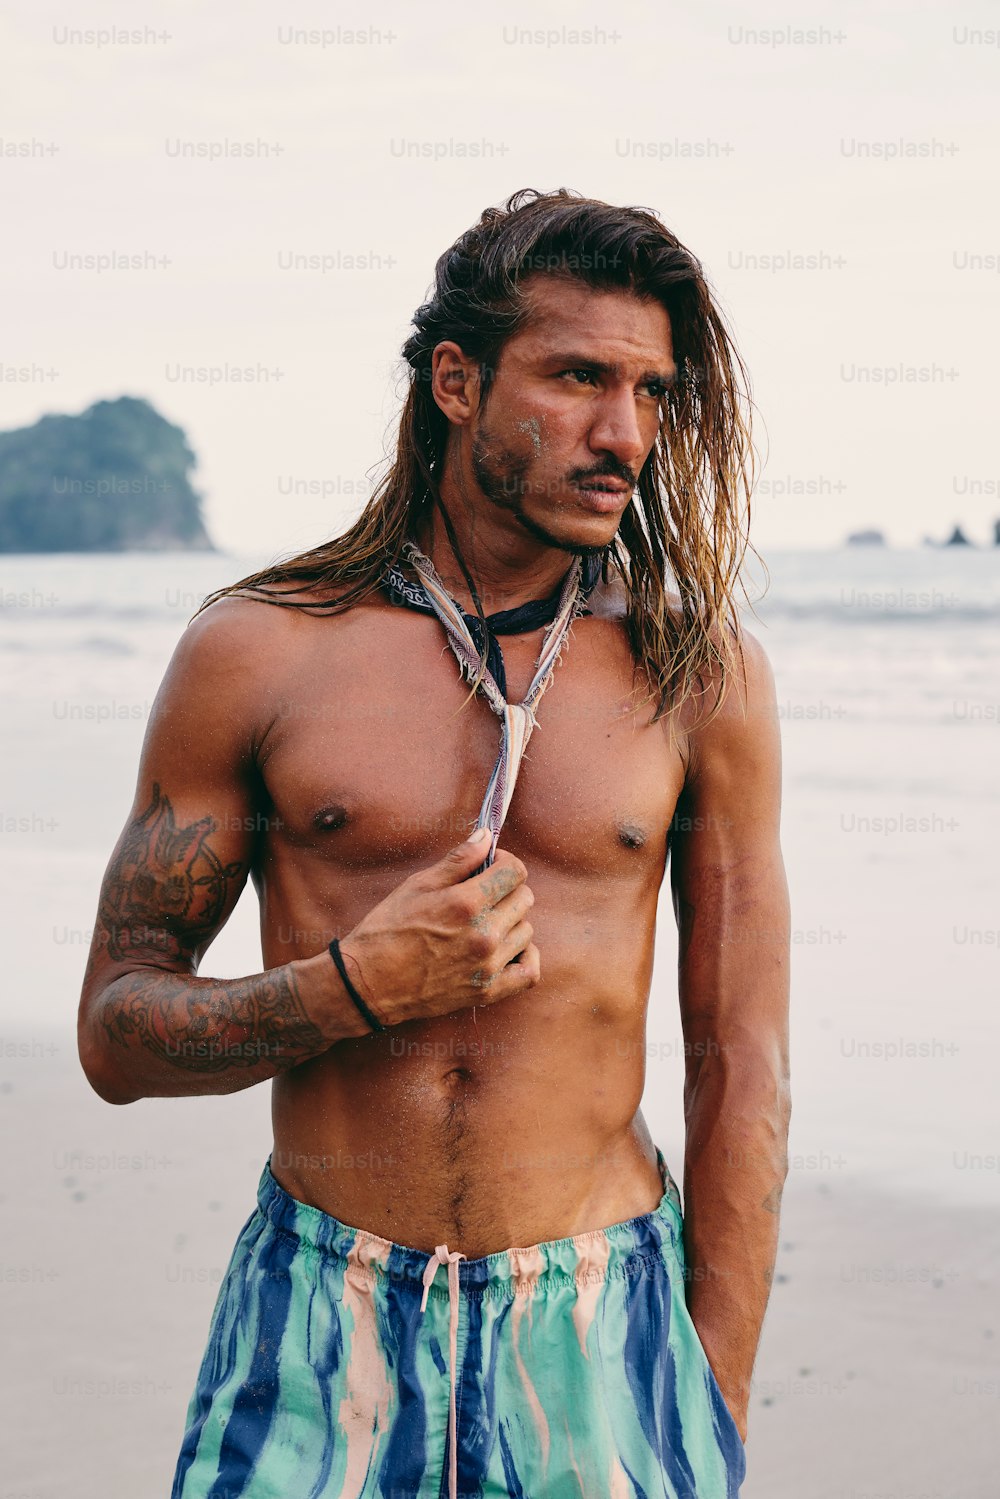 Un hombre sin camisa parado en una playa sosteniendo un par de tijeras